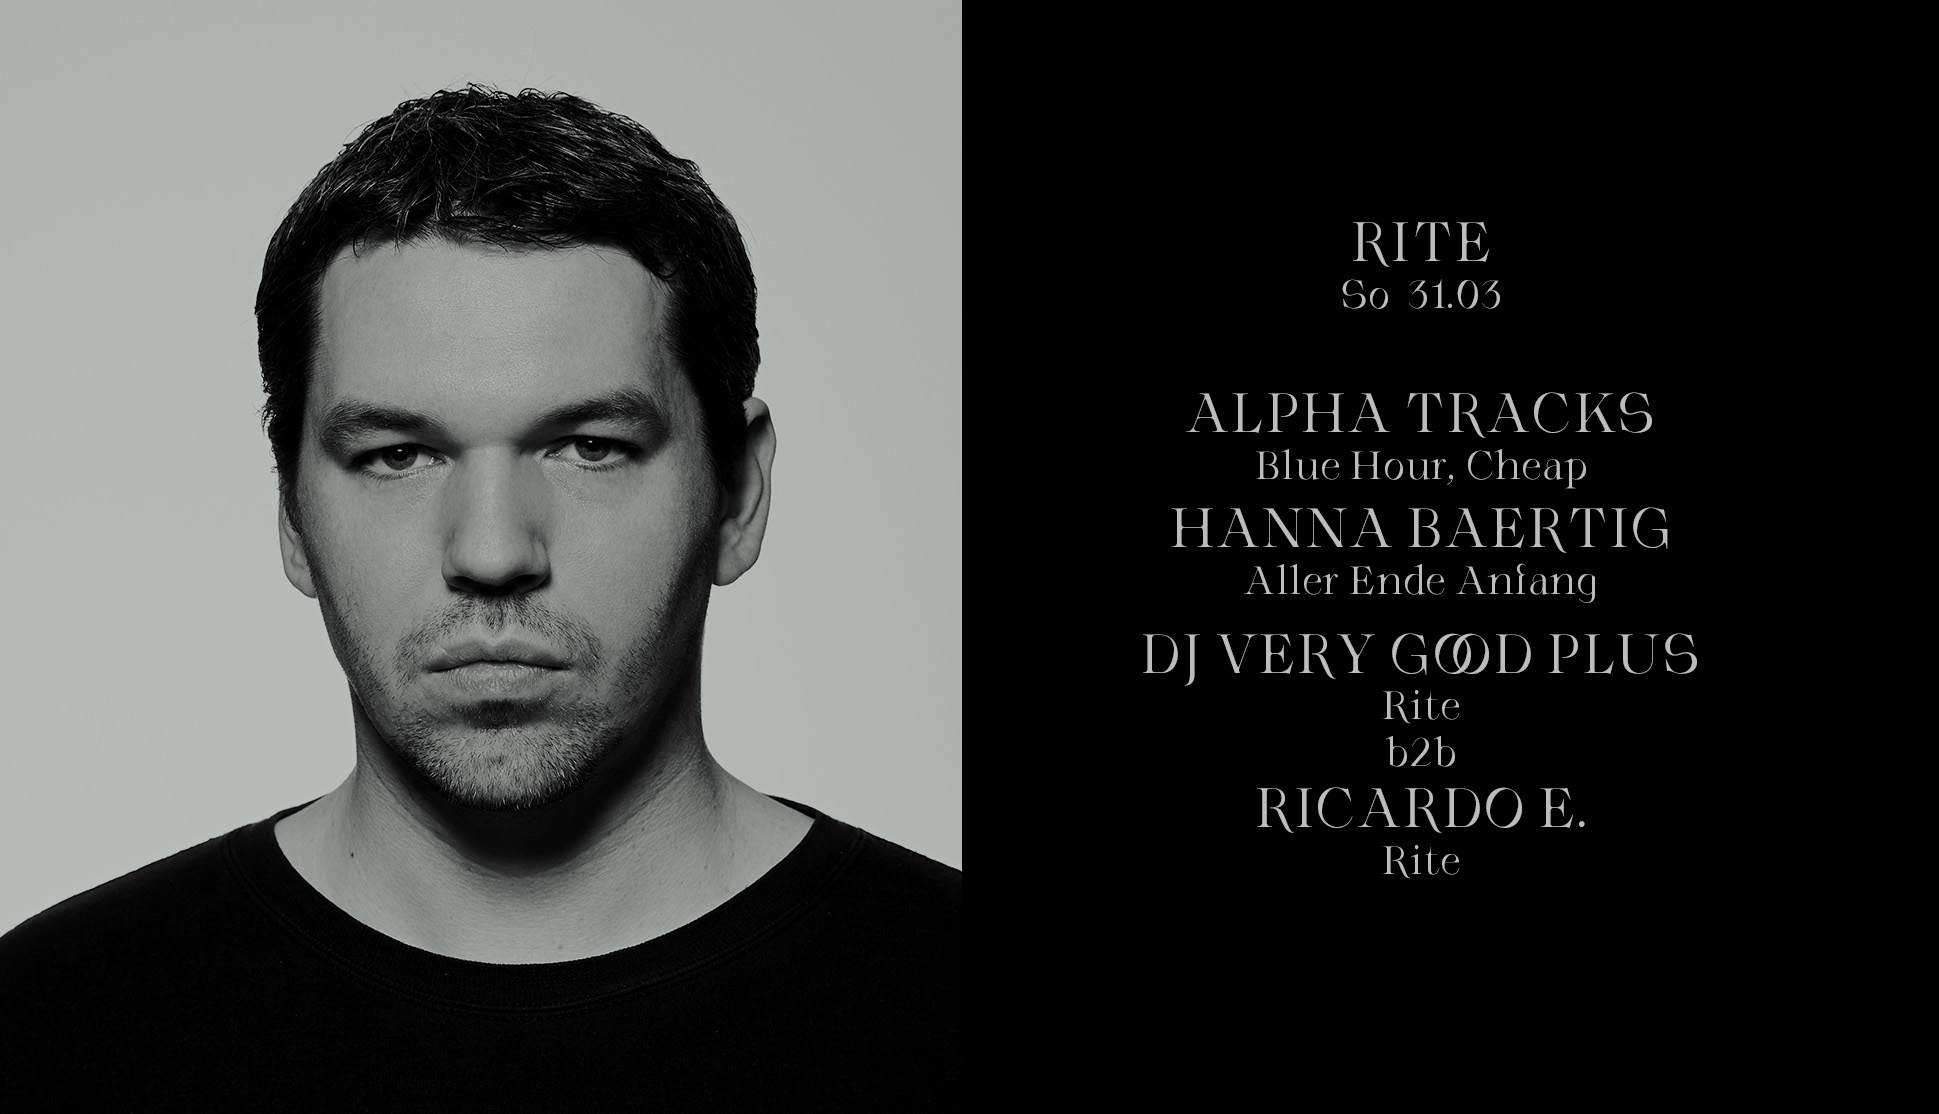 Rite with Alpha Tracks, DJ Very Good Plus, Hanna Baertig & Ricardo E - フライヤー表